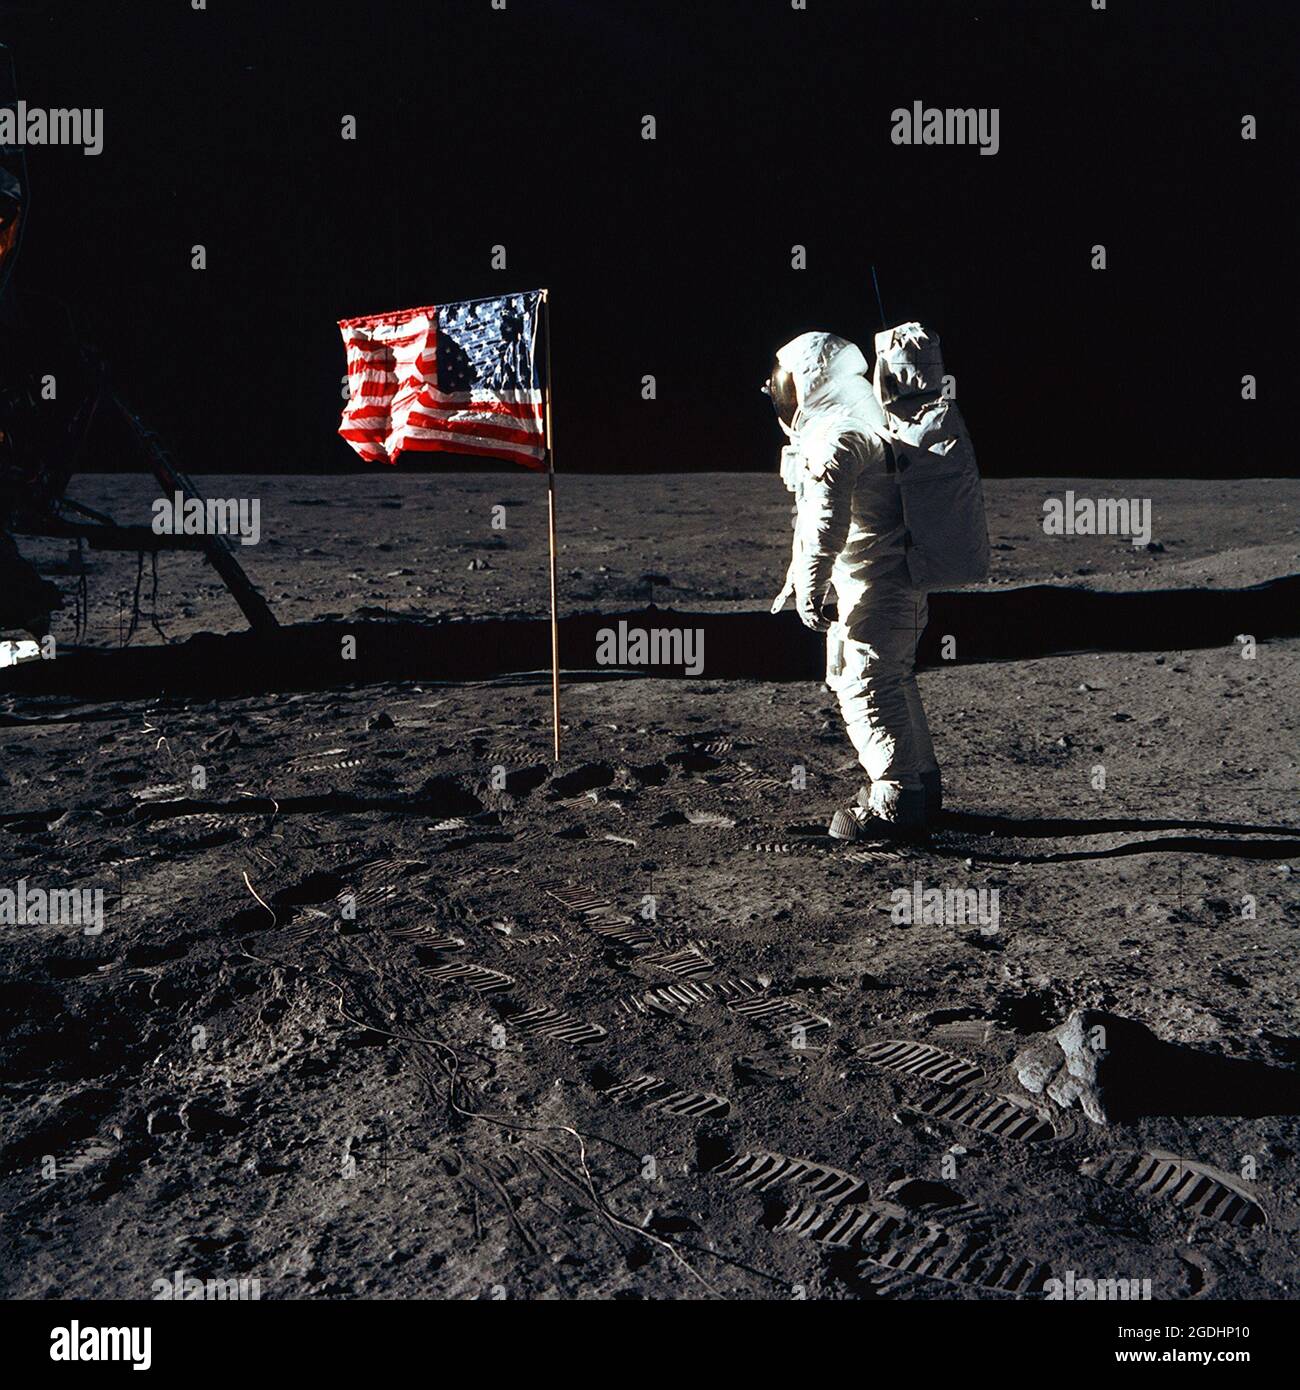 Astronaut Buzz Aldrin, Mondmodulpilot der ersten Mondlandemission Apollo 11, auf der Oberfläche des Mondes. Stockfoto